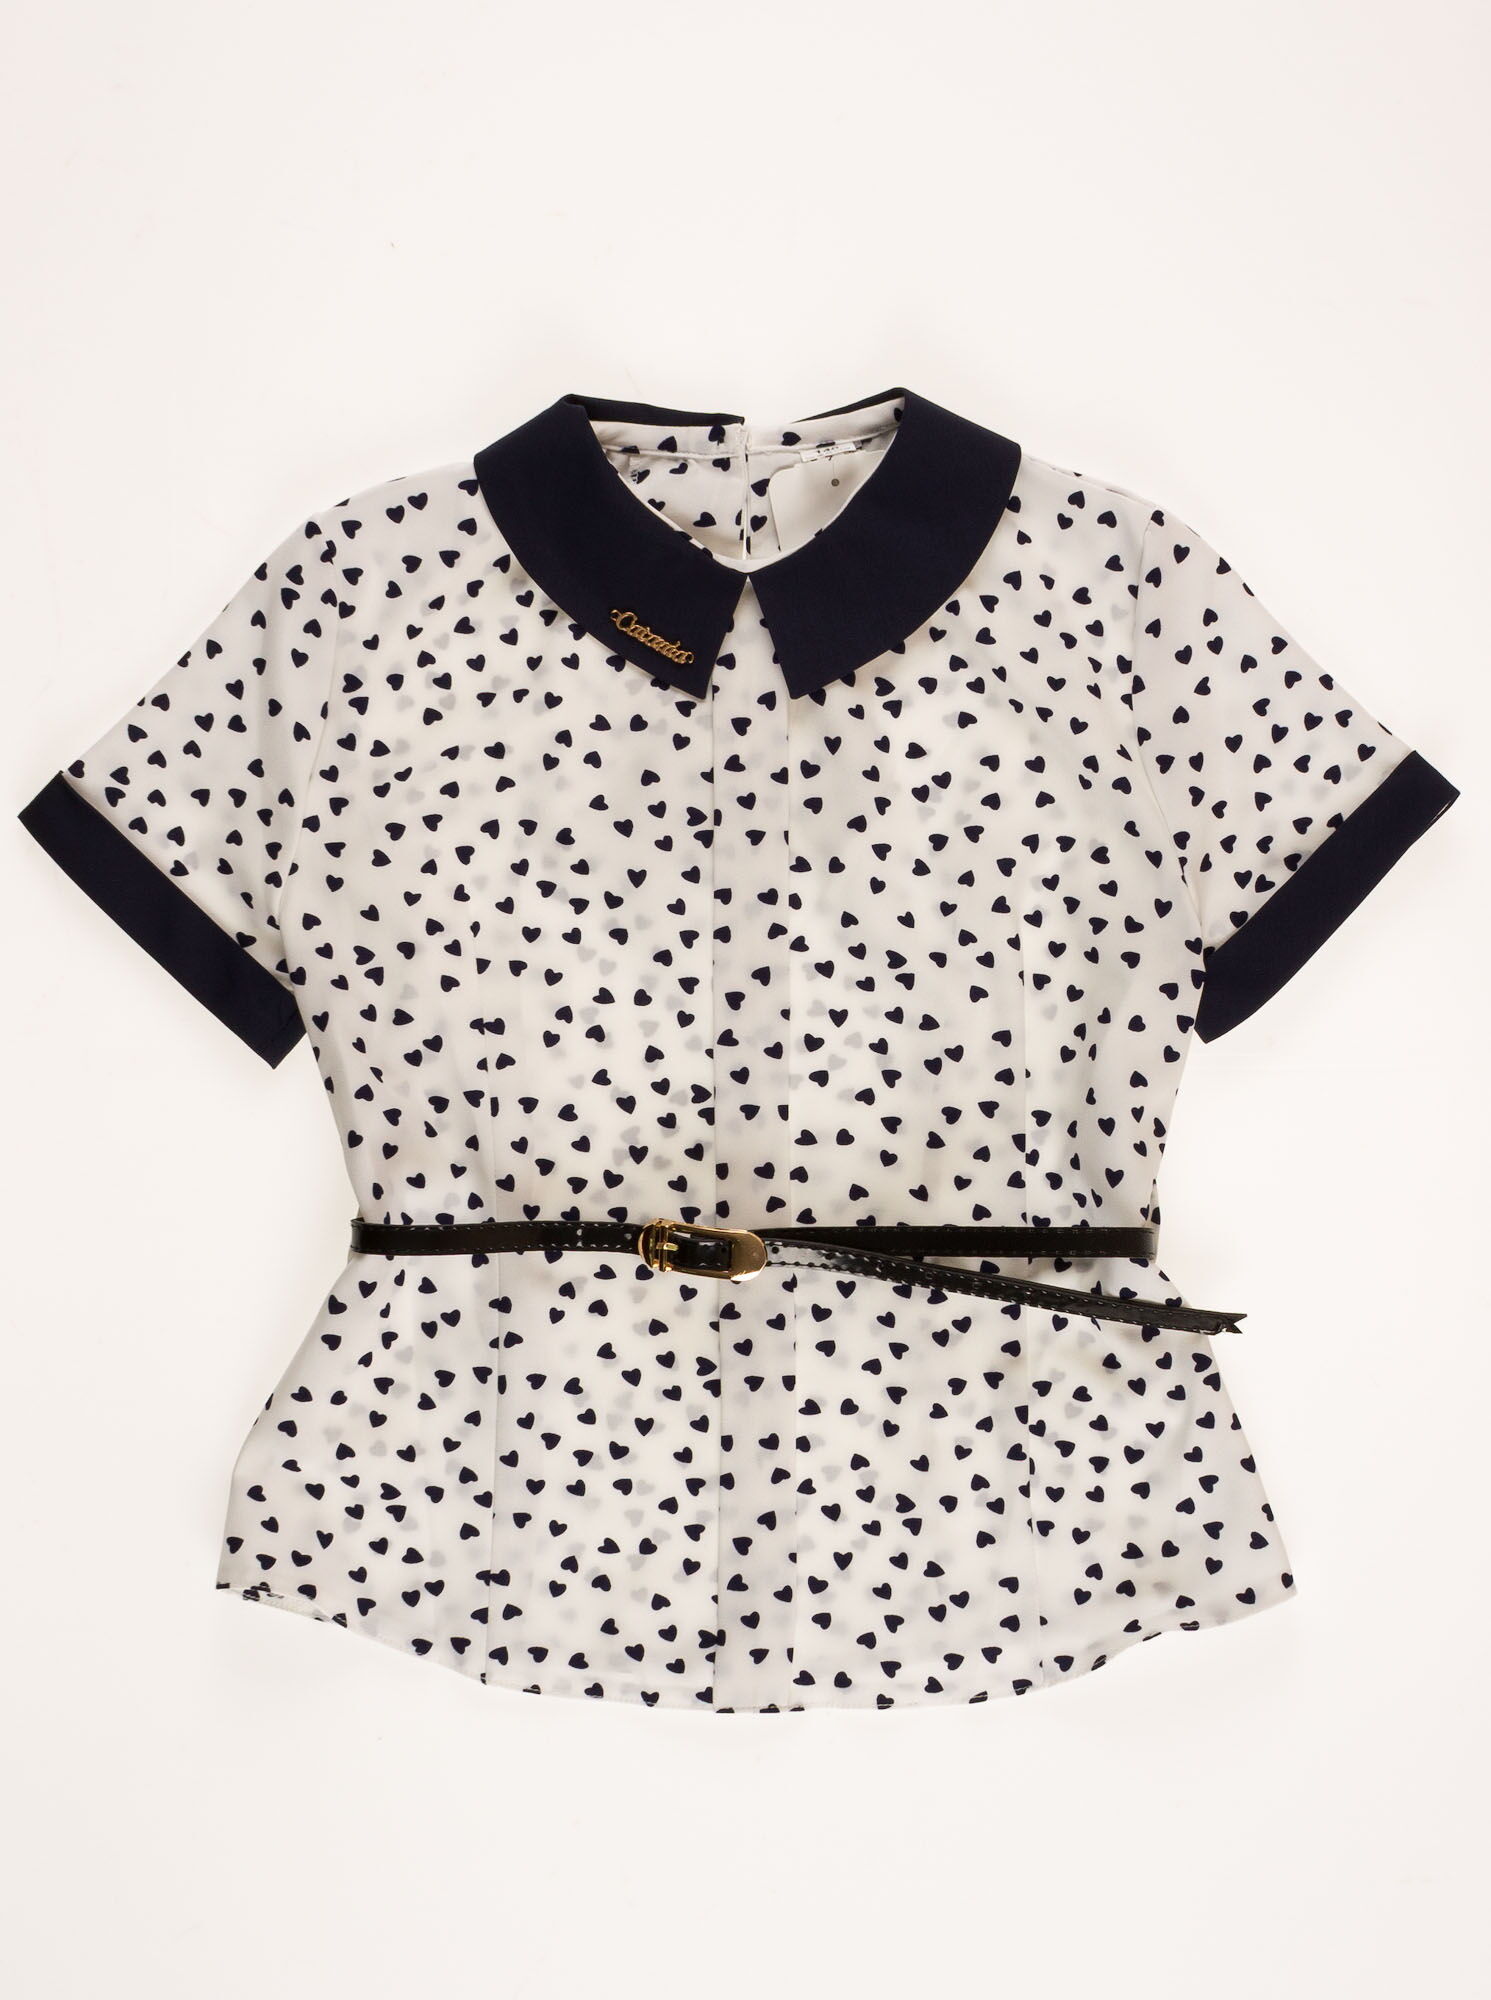 Блузка с коротким рукавом для девочки MEVIS Сердечки белая 08531 - цена